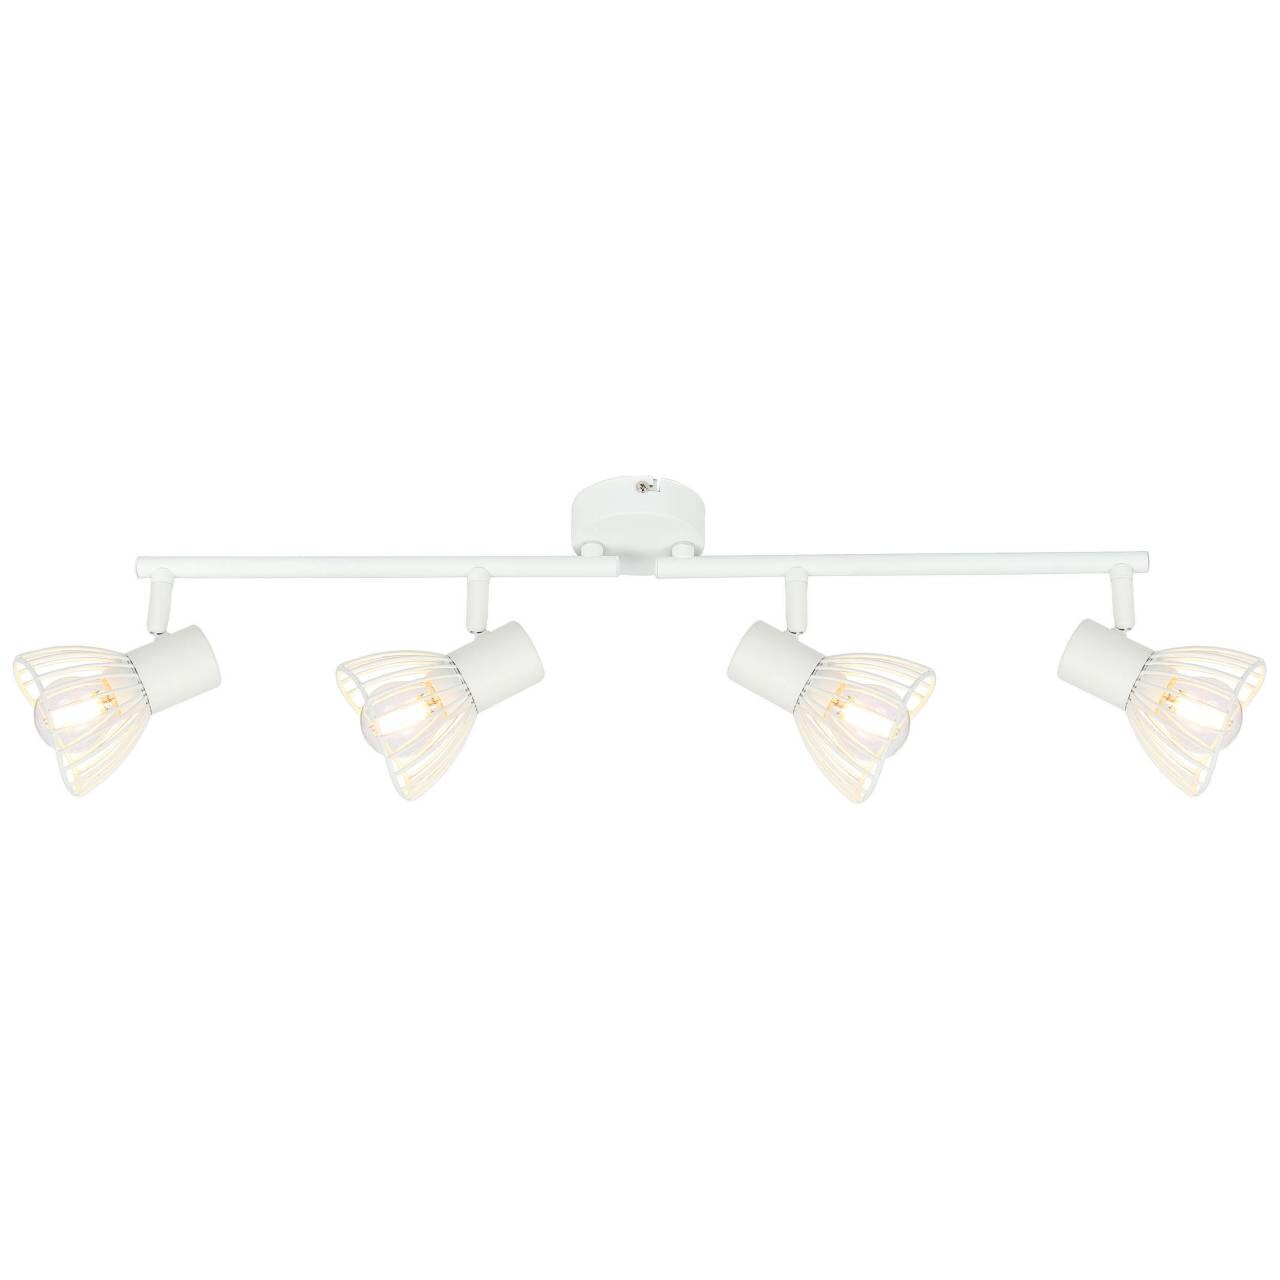 BRILLIANT Lampe Elhi Spotrohr 4flg weiß   4x D45, E14, 40W, geeignet für Tropfenlampen (nicht enthalten)   Köpfe schwenk